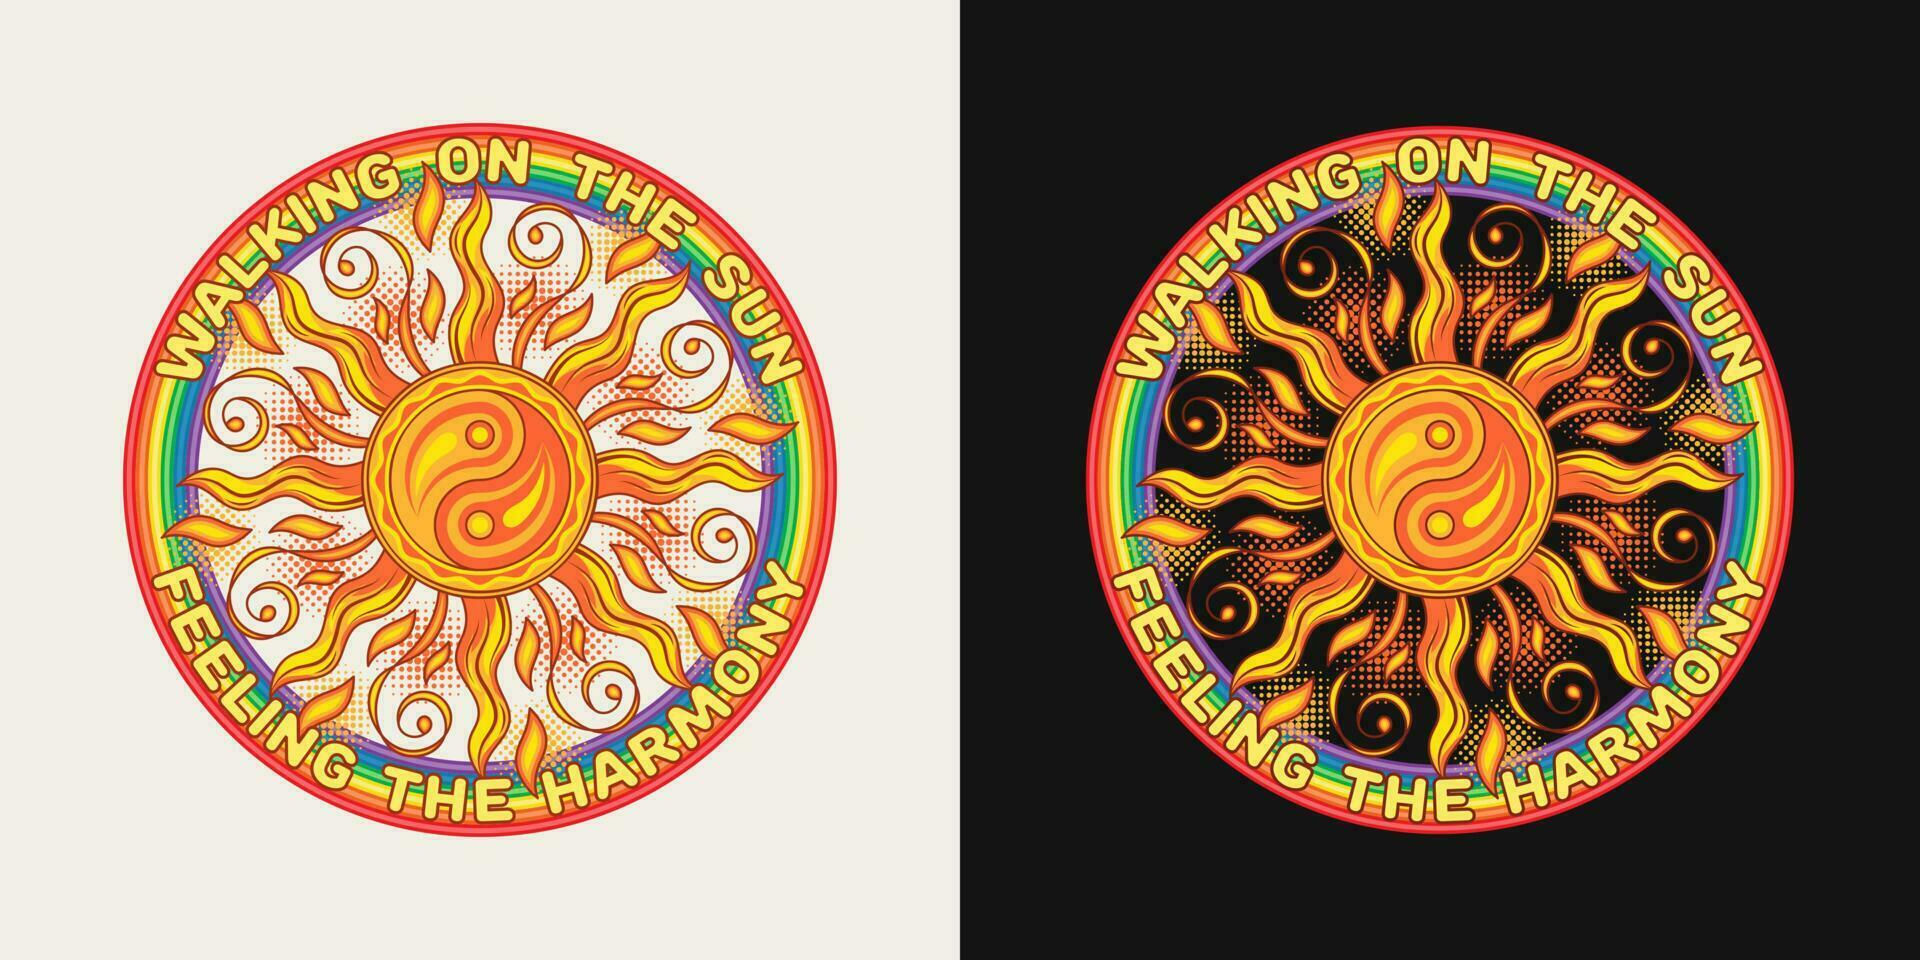 circular etiqueta con sol, ying yang símbolo, arcoíris, texto. concepto de armonía y balance. maravilloso, hippie estilo. para ropa, vestir, camisetas, superficie decoración vector